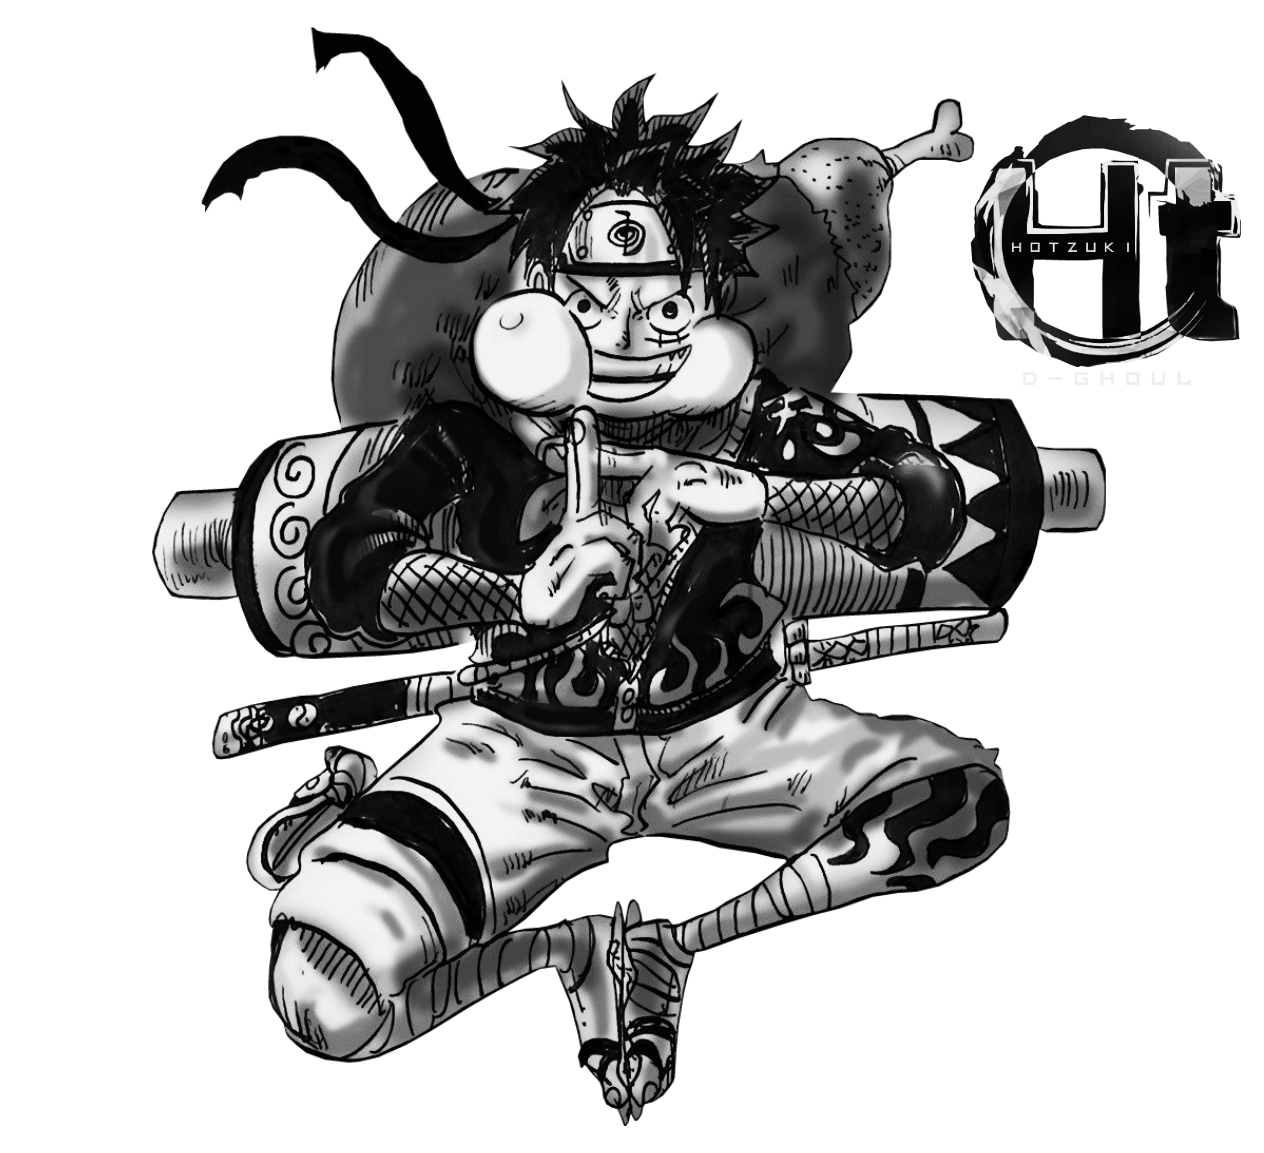 Luffy ( One Piece) by RayLuisHDX2 on DeviantArt